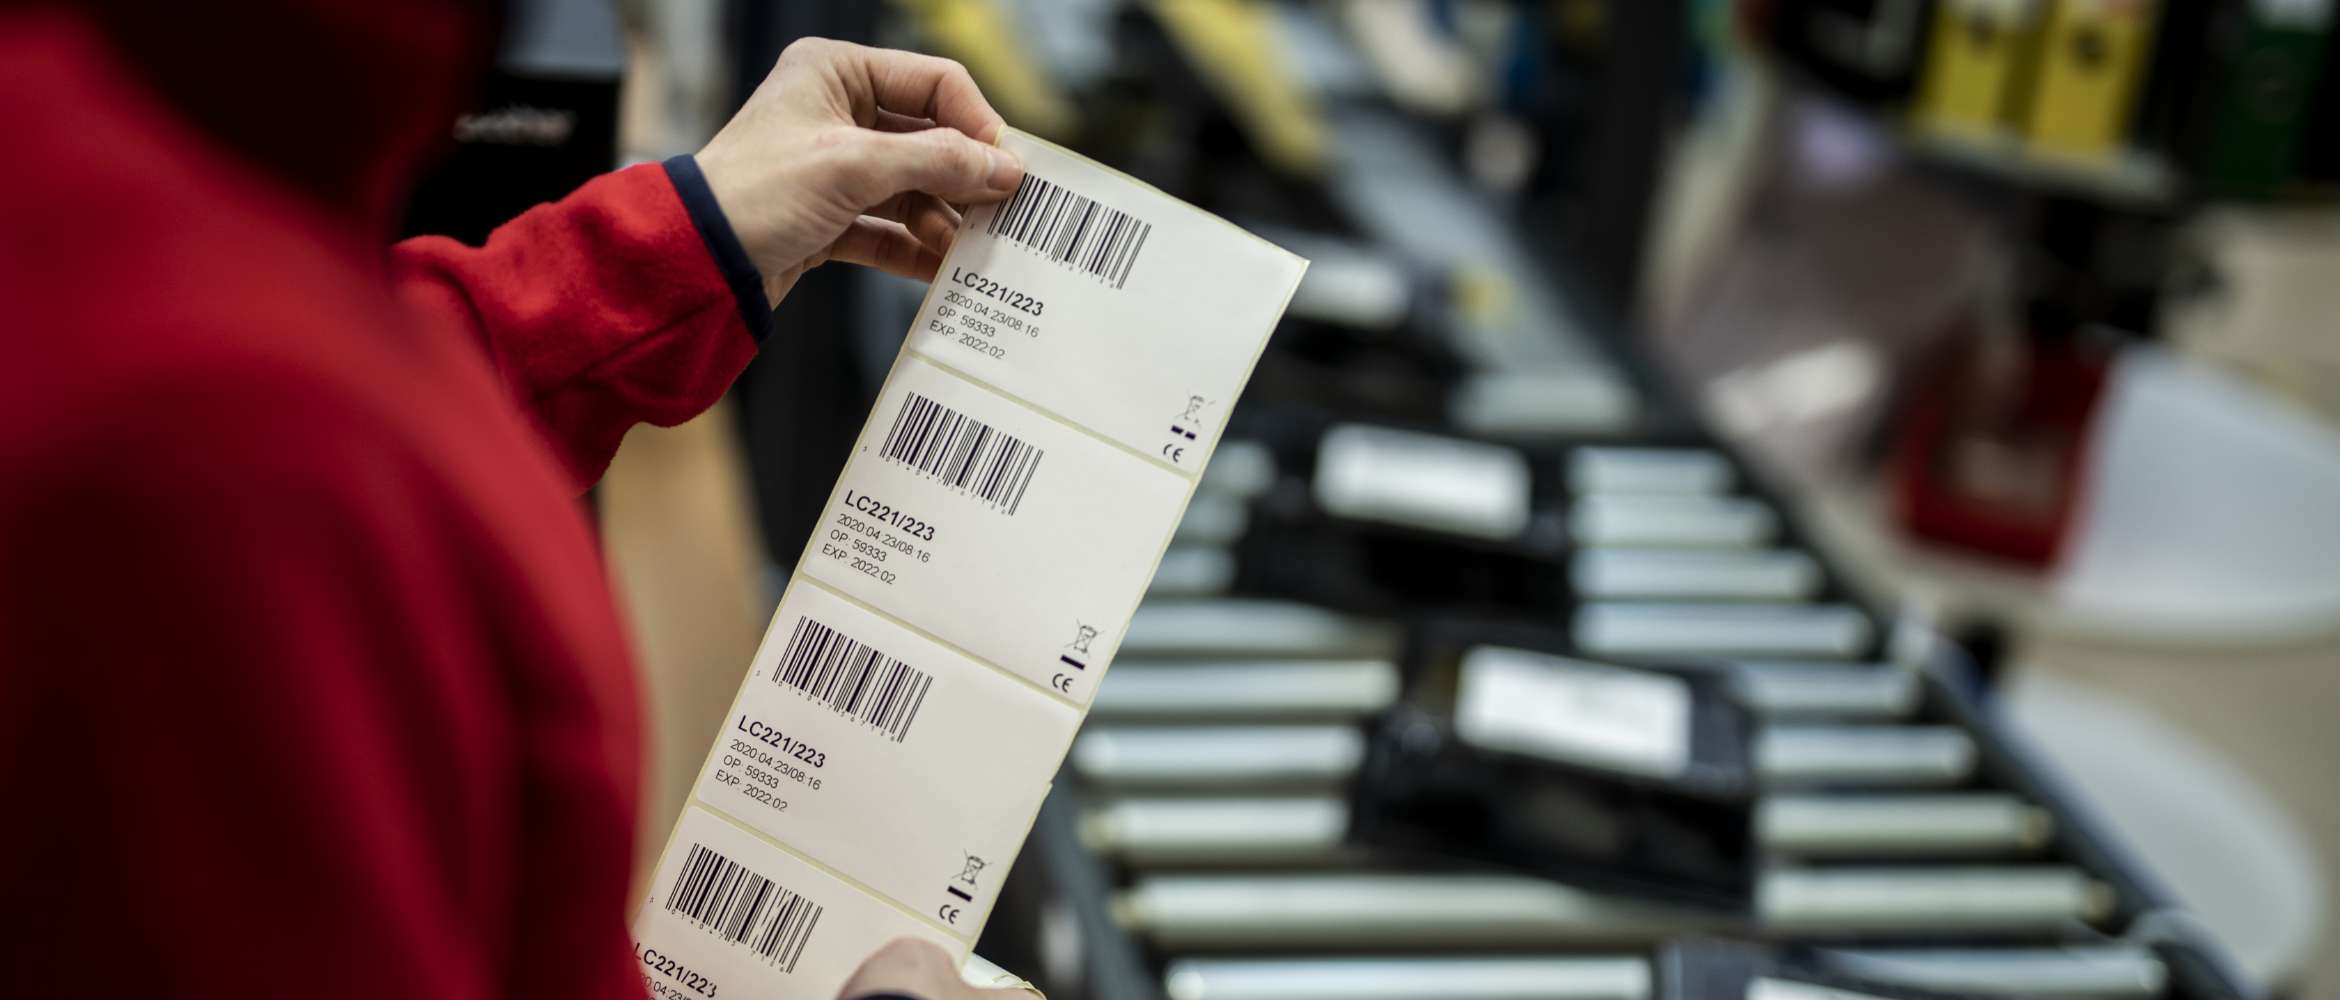 Un travailleur sur une ligne de production dans une entreprise de fabrication et de logistique vérifie une étiquette de code-barres imprimée avant de l'appliquer sur un emballage